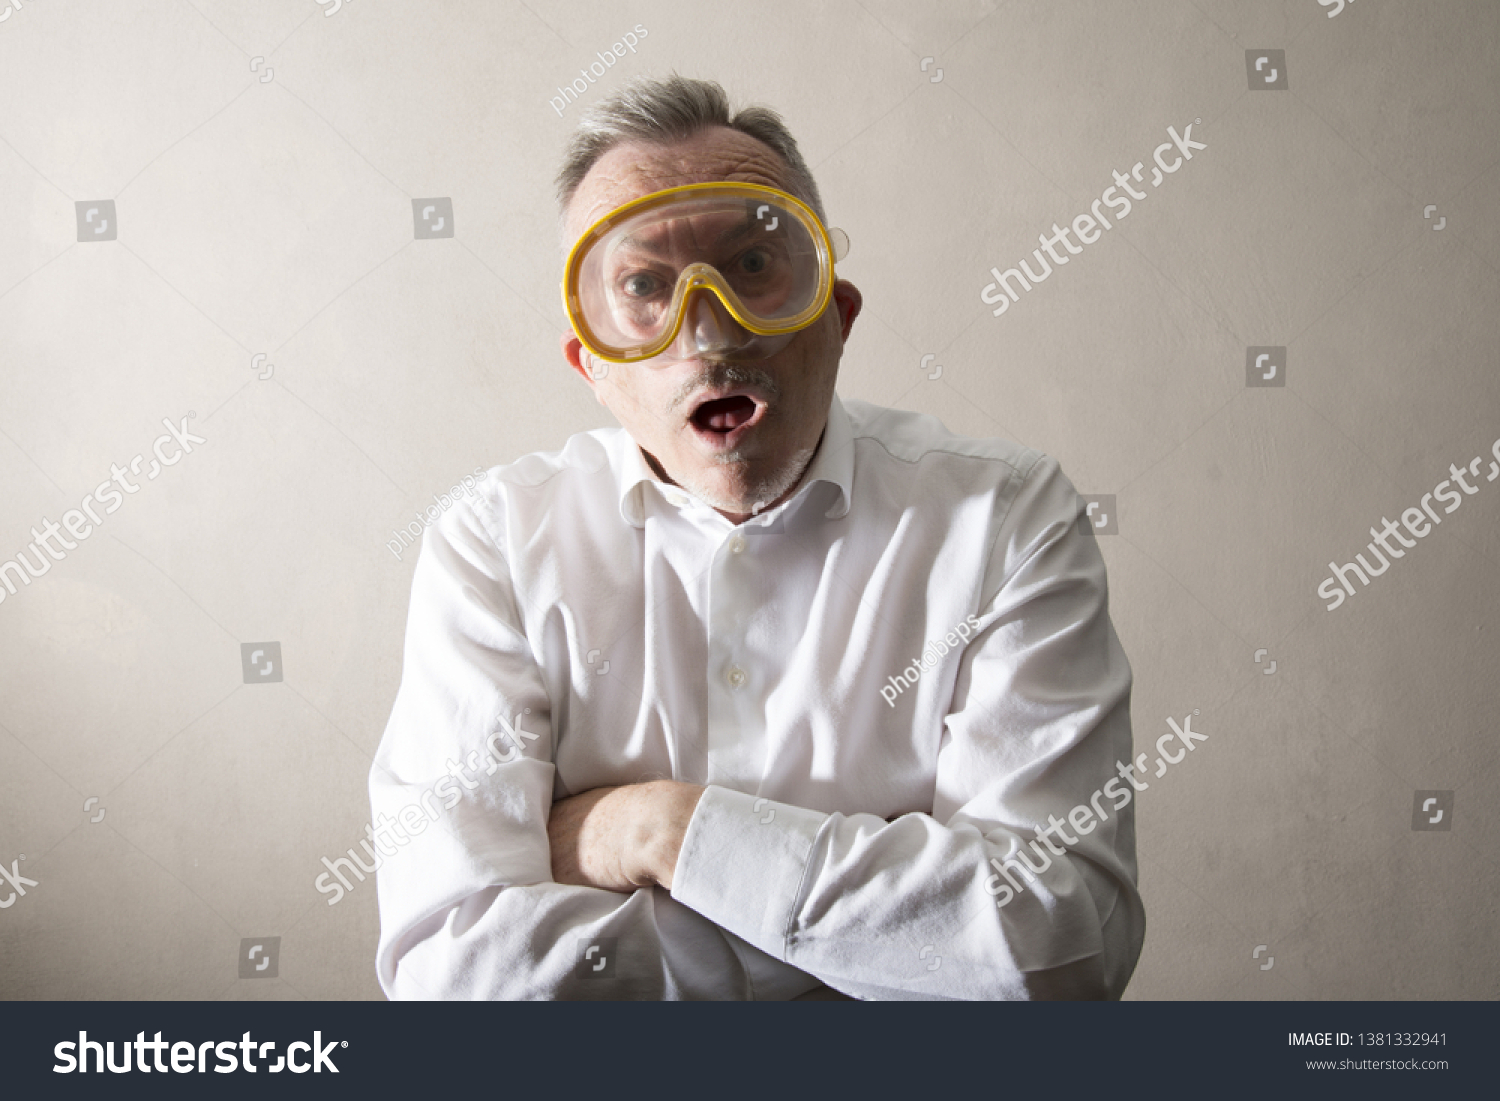 a man having a scuba mask #1381332941